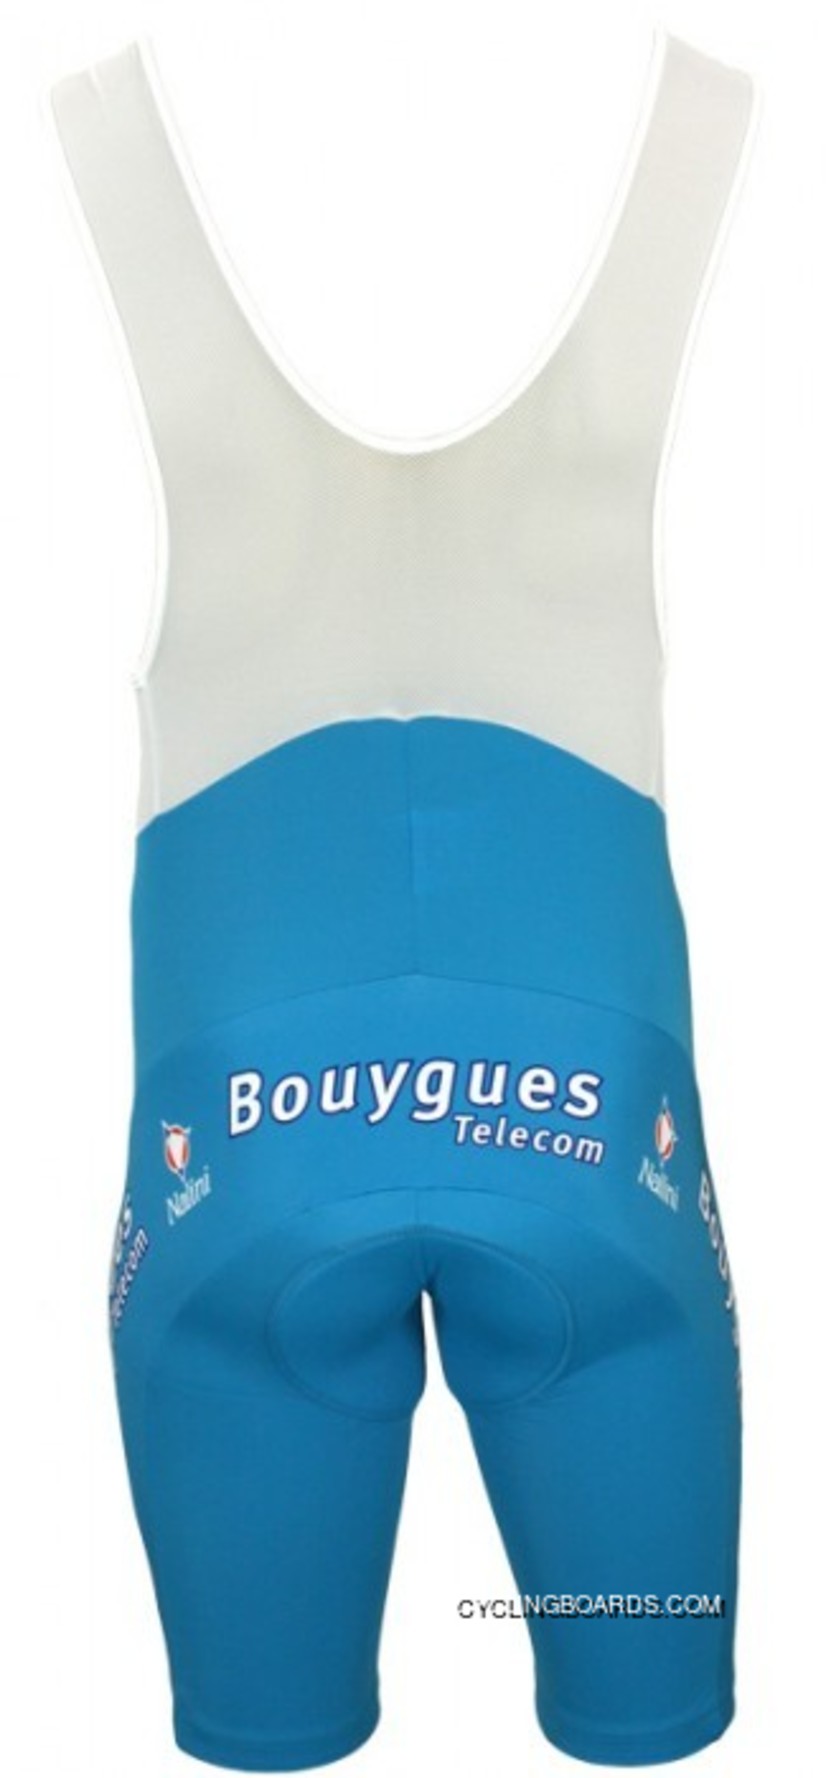 Bouygues Télécom 2006 Bib Shorts - Radsport-Profi-Team Tj-820-3520 Latest